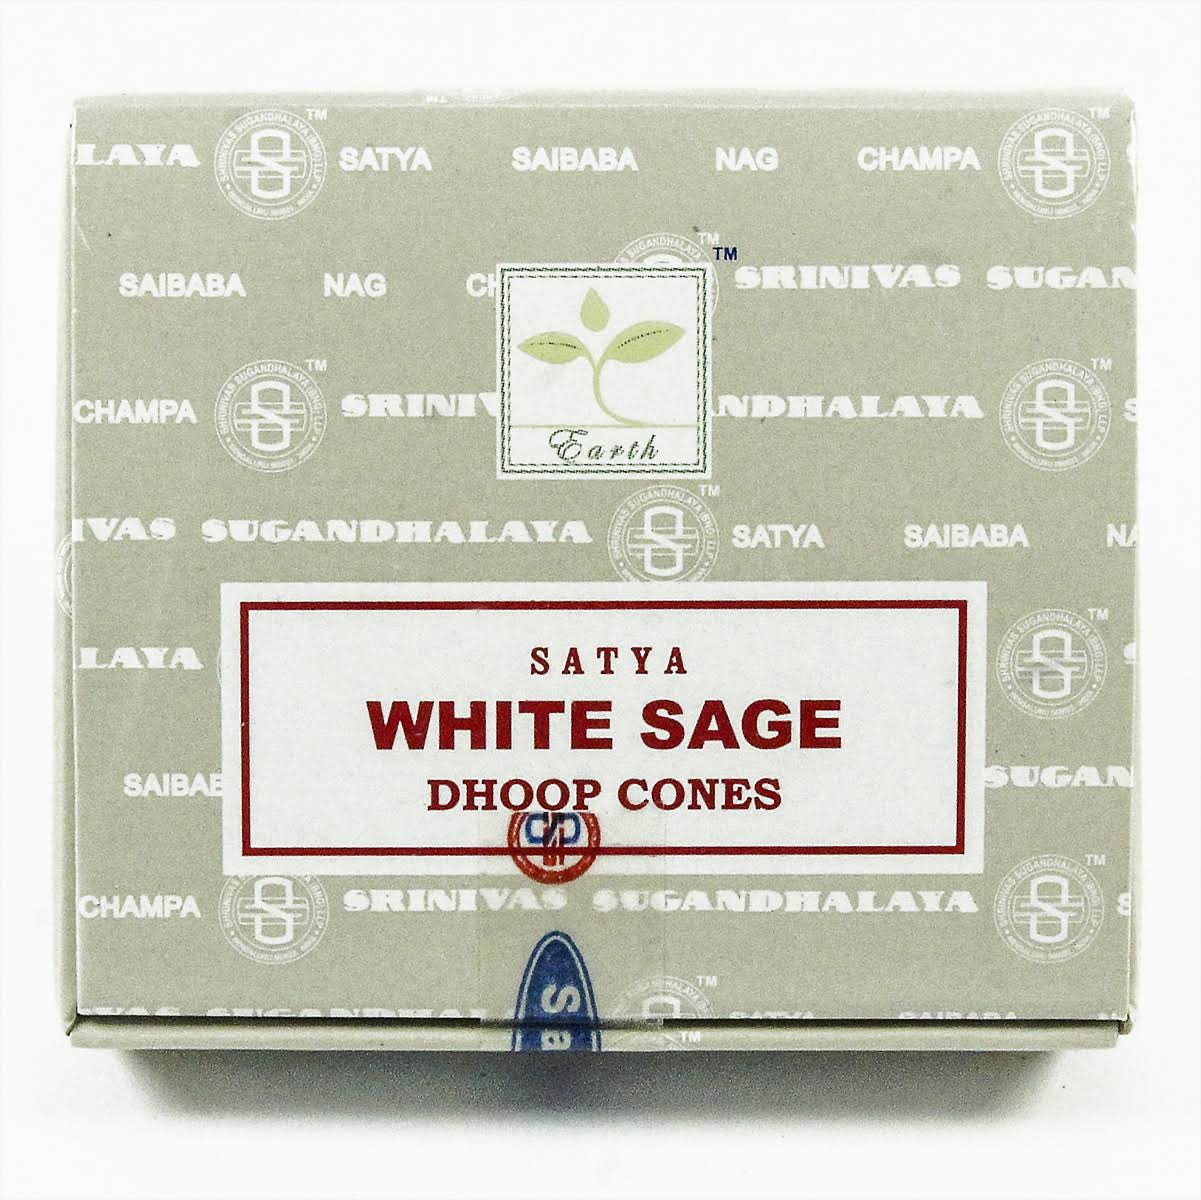 Satya White Sage Dhoop Cones